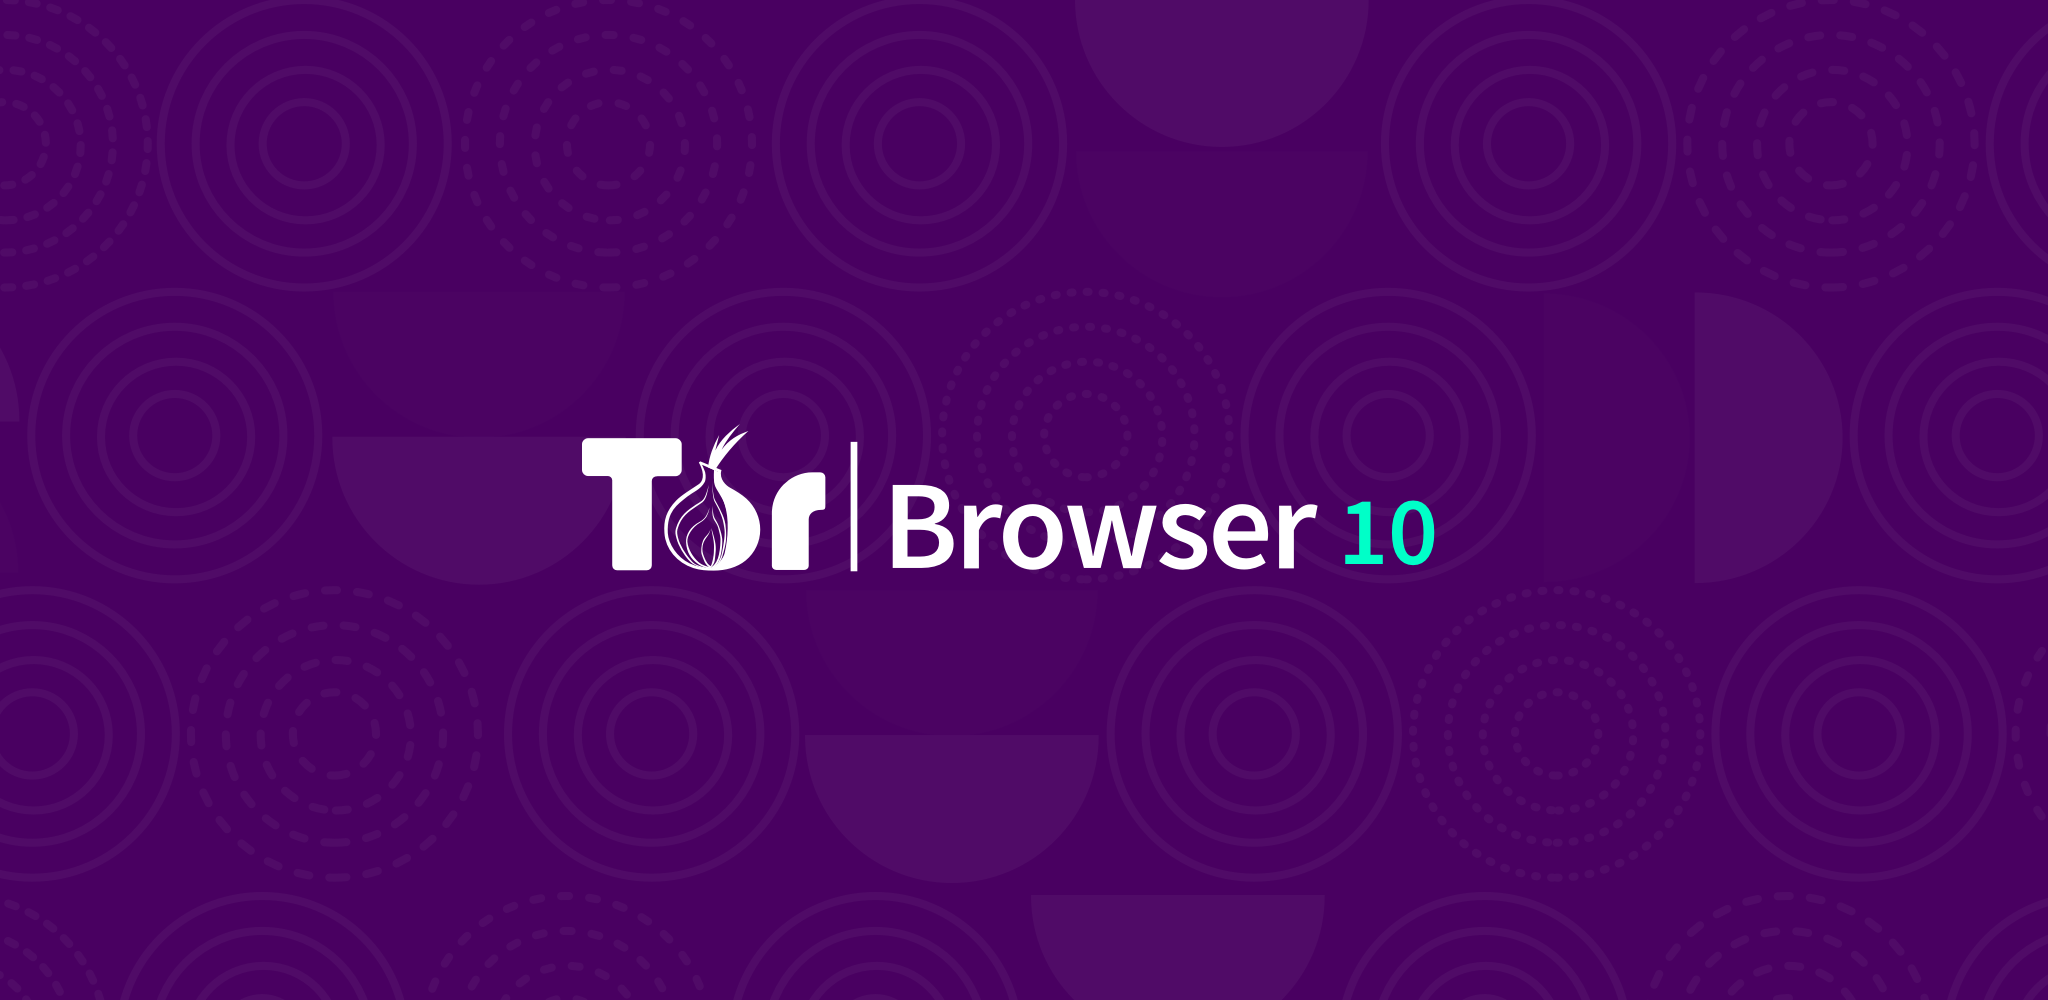 Tor browser for firefox 4 gidra семена выписать конопля